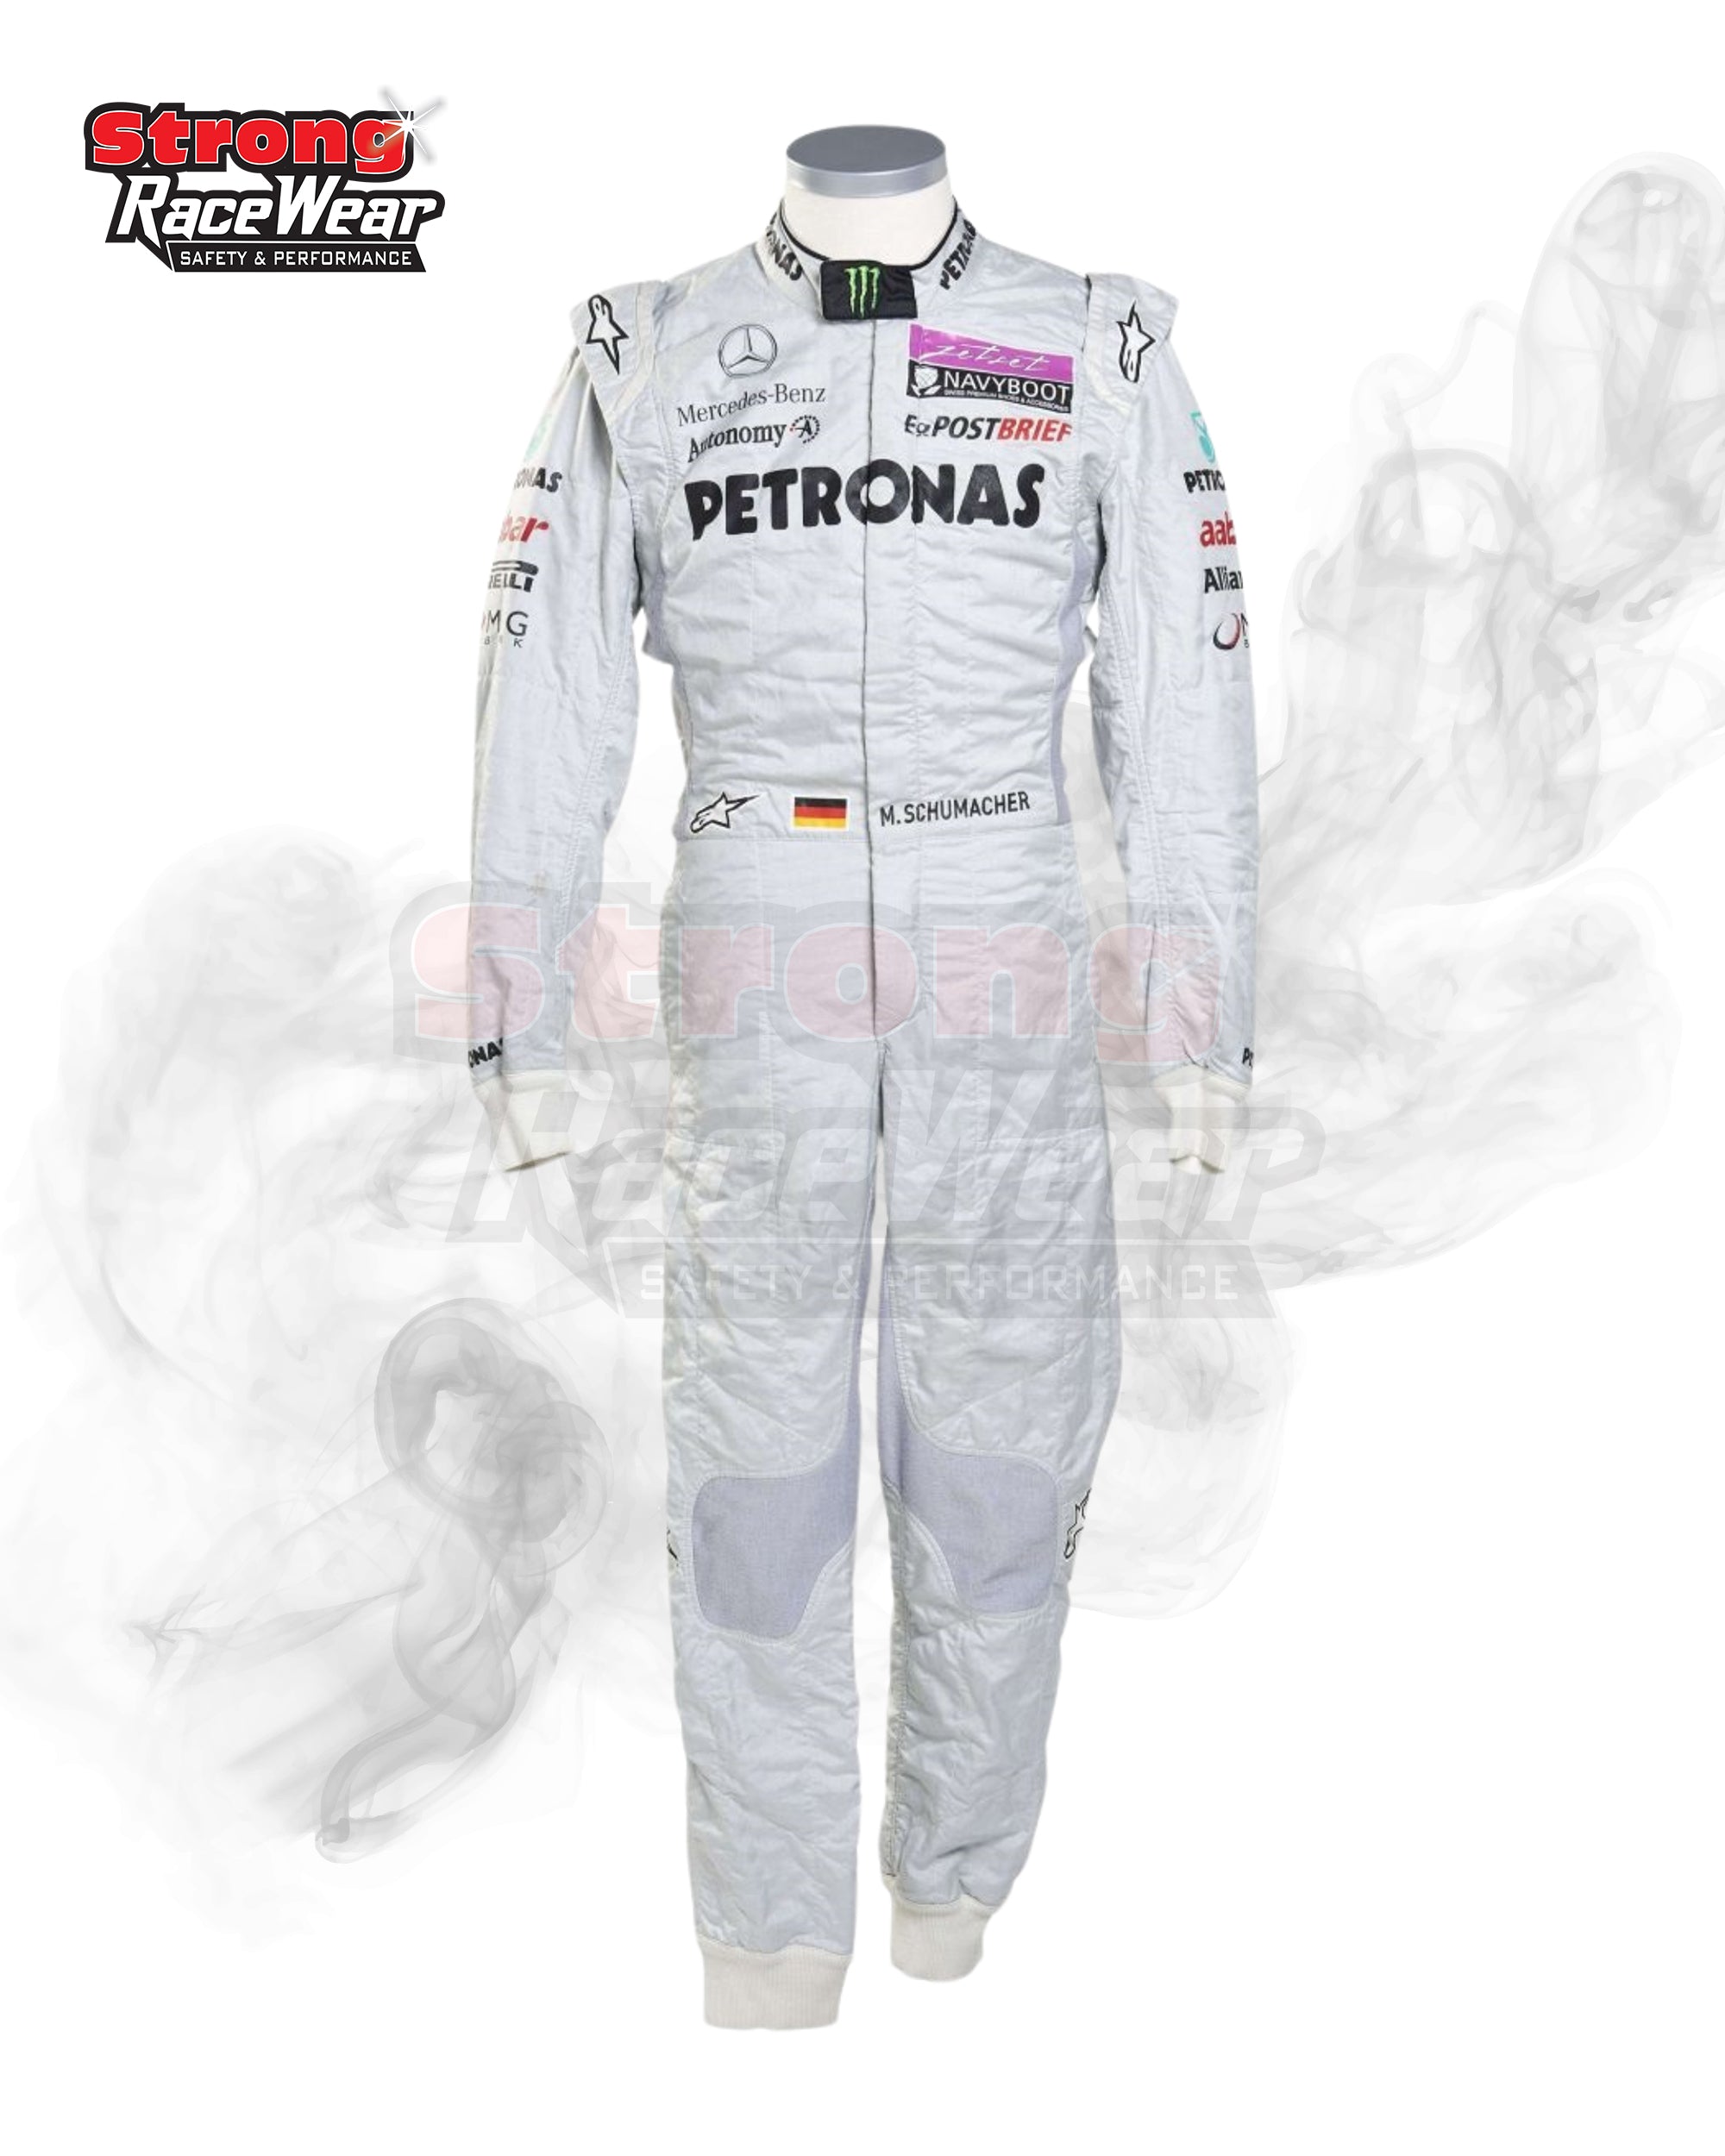 2011 Michael Schumacher Mercedes F1 Racing Suit